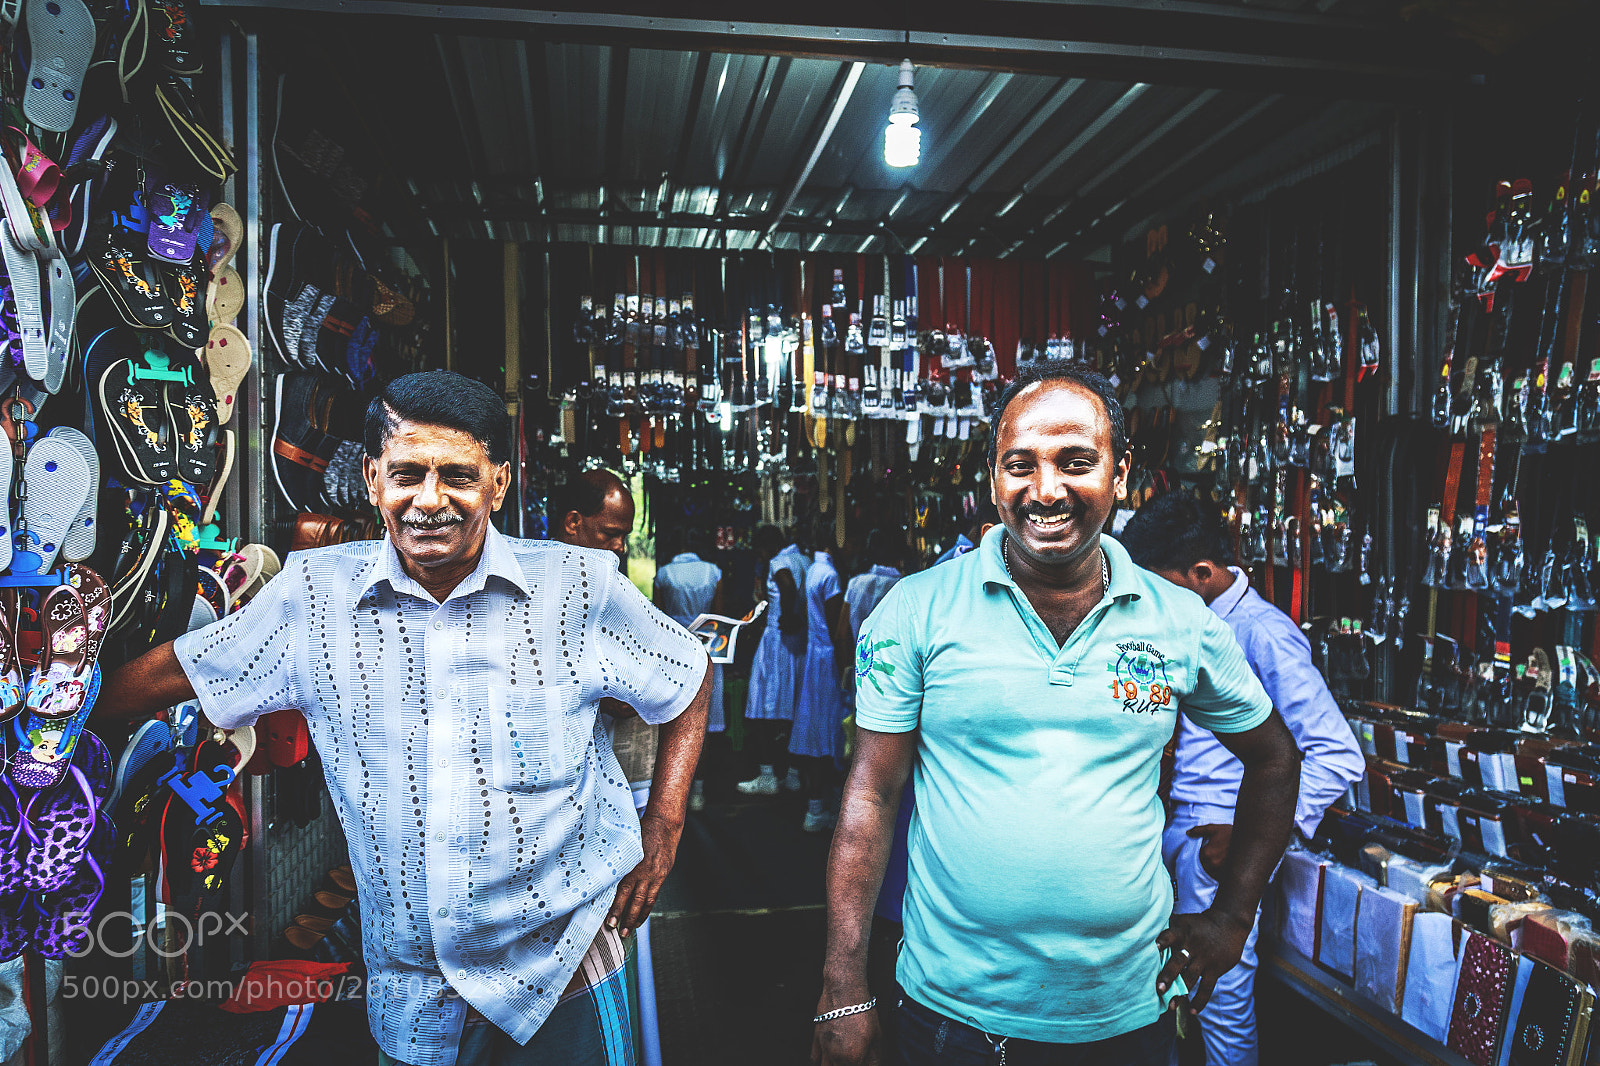 Canon EOS 6D sample photo. Shopkeepers, maharagama, sri lanka #2 photography